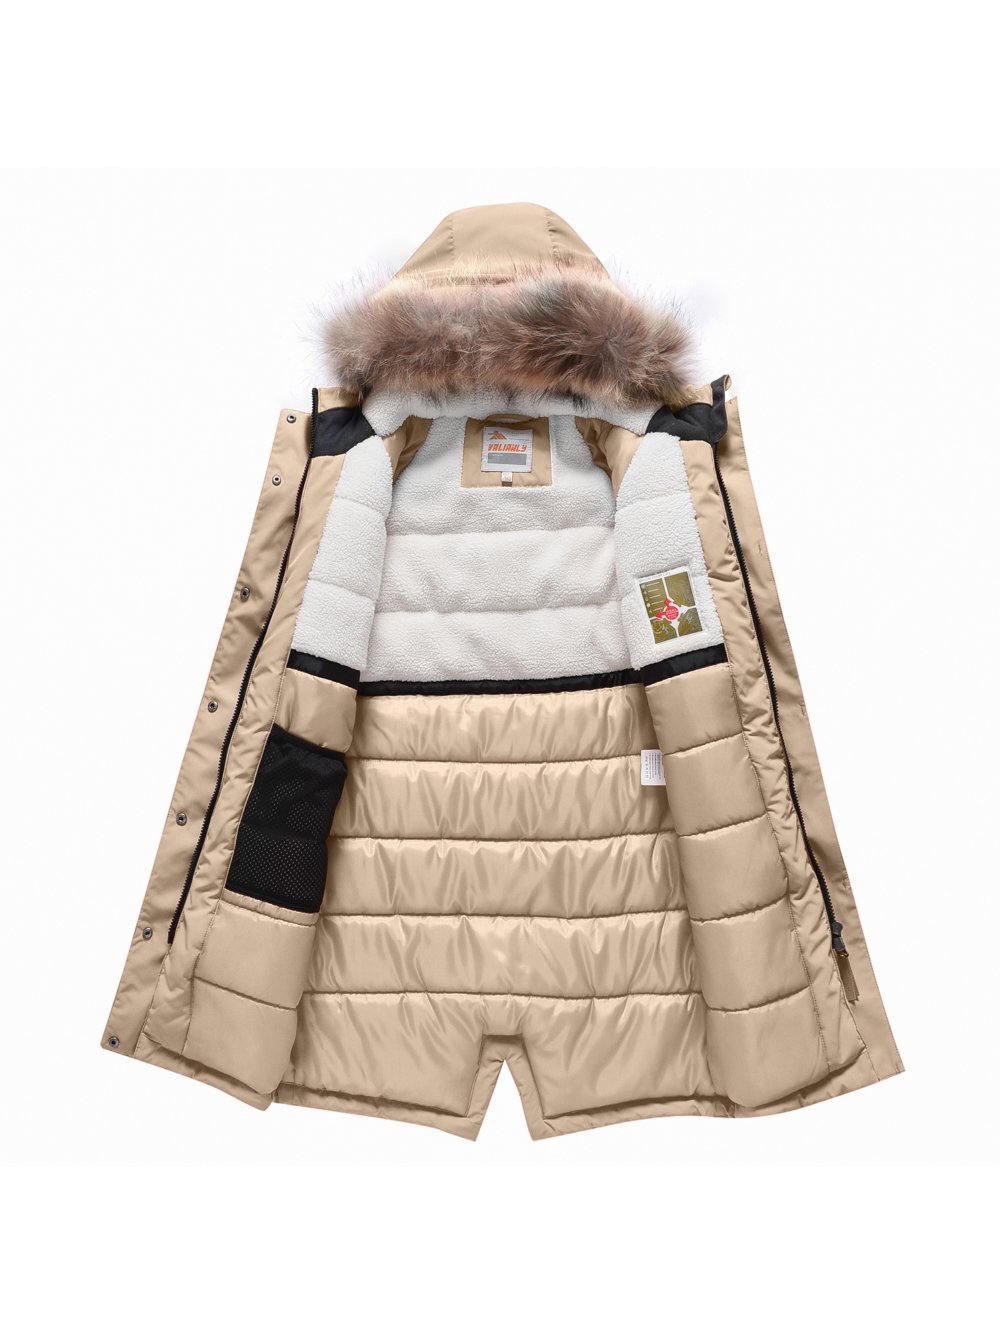 Купить куртку парку для девочки оптом от производителя недорого в Москве 9342B 1